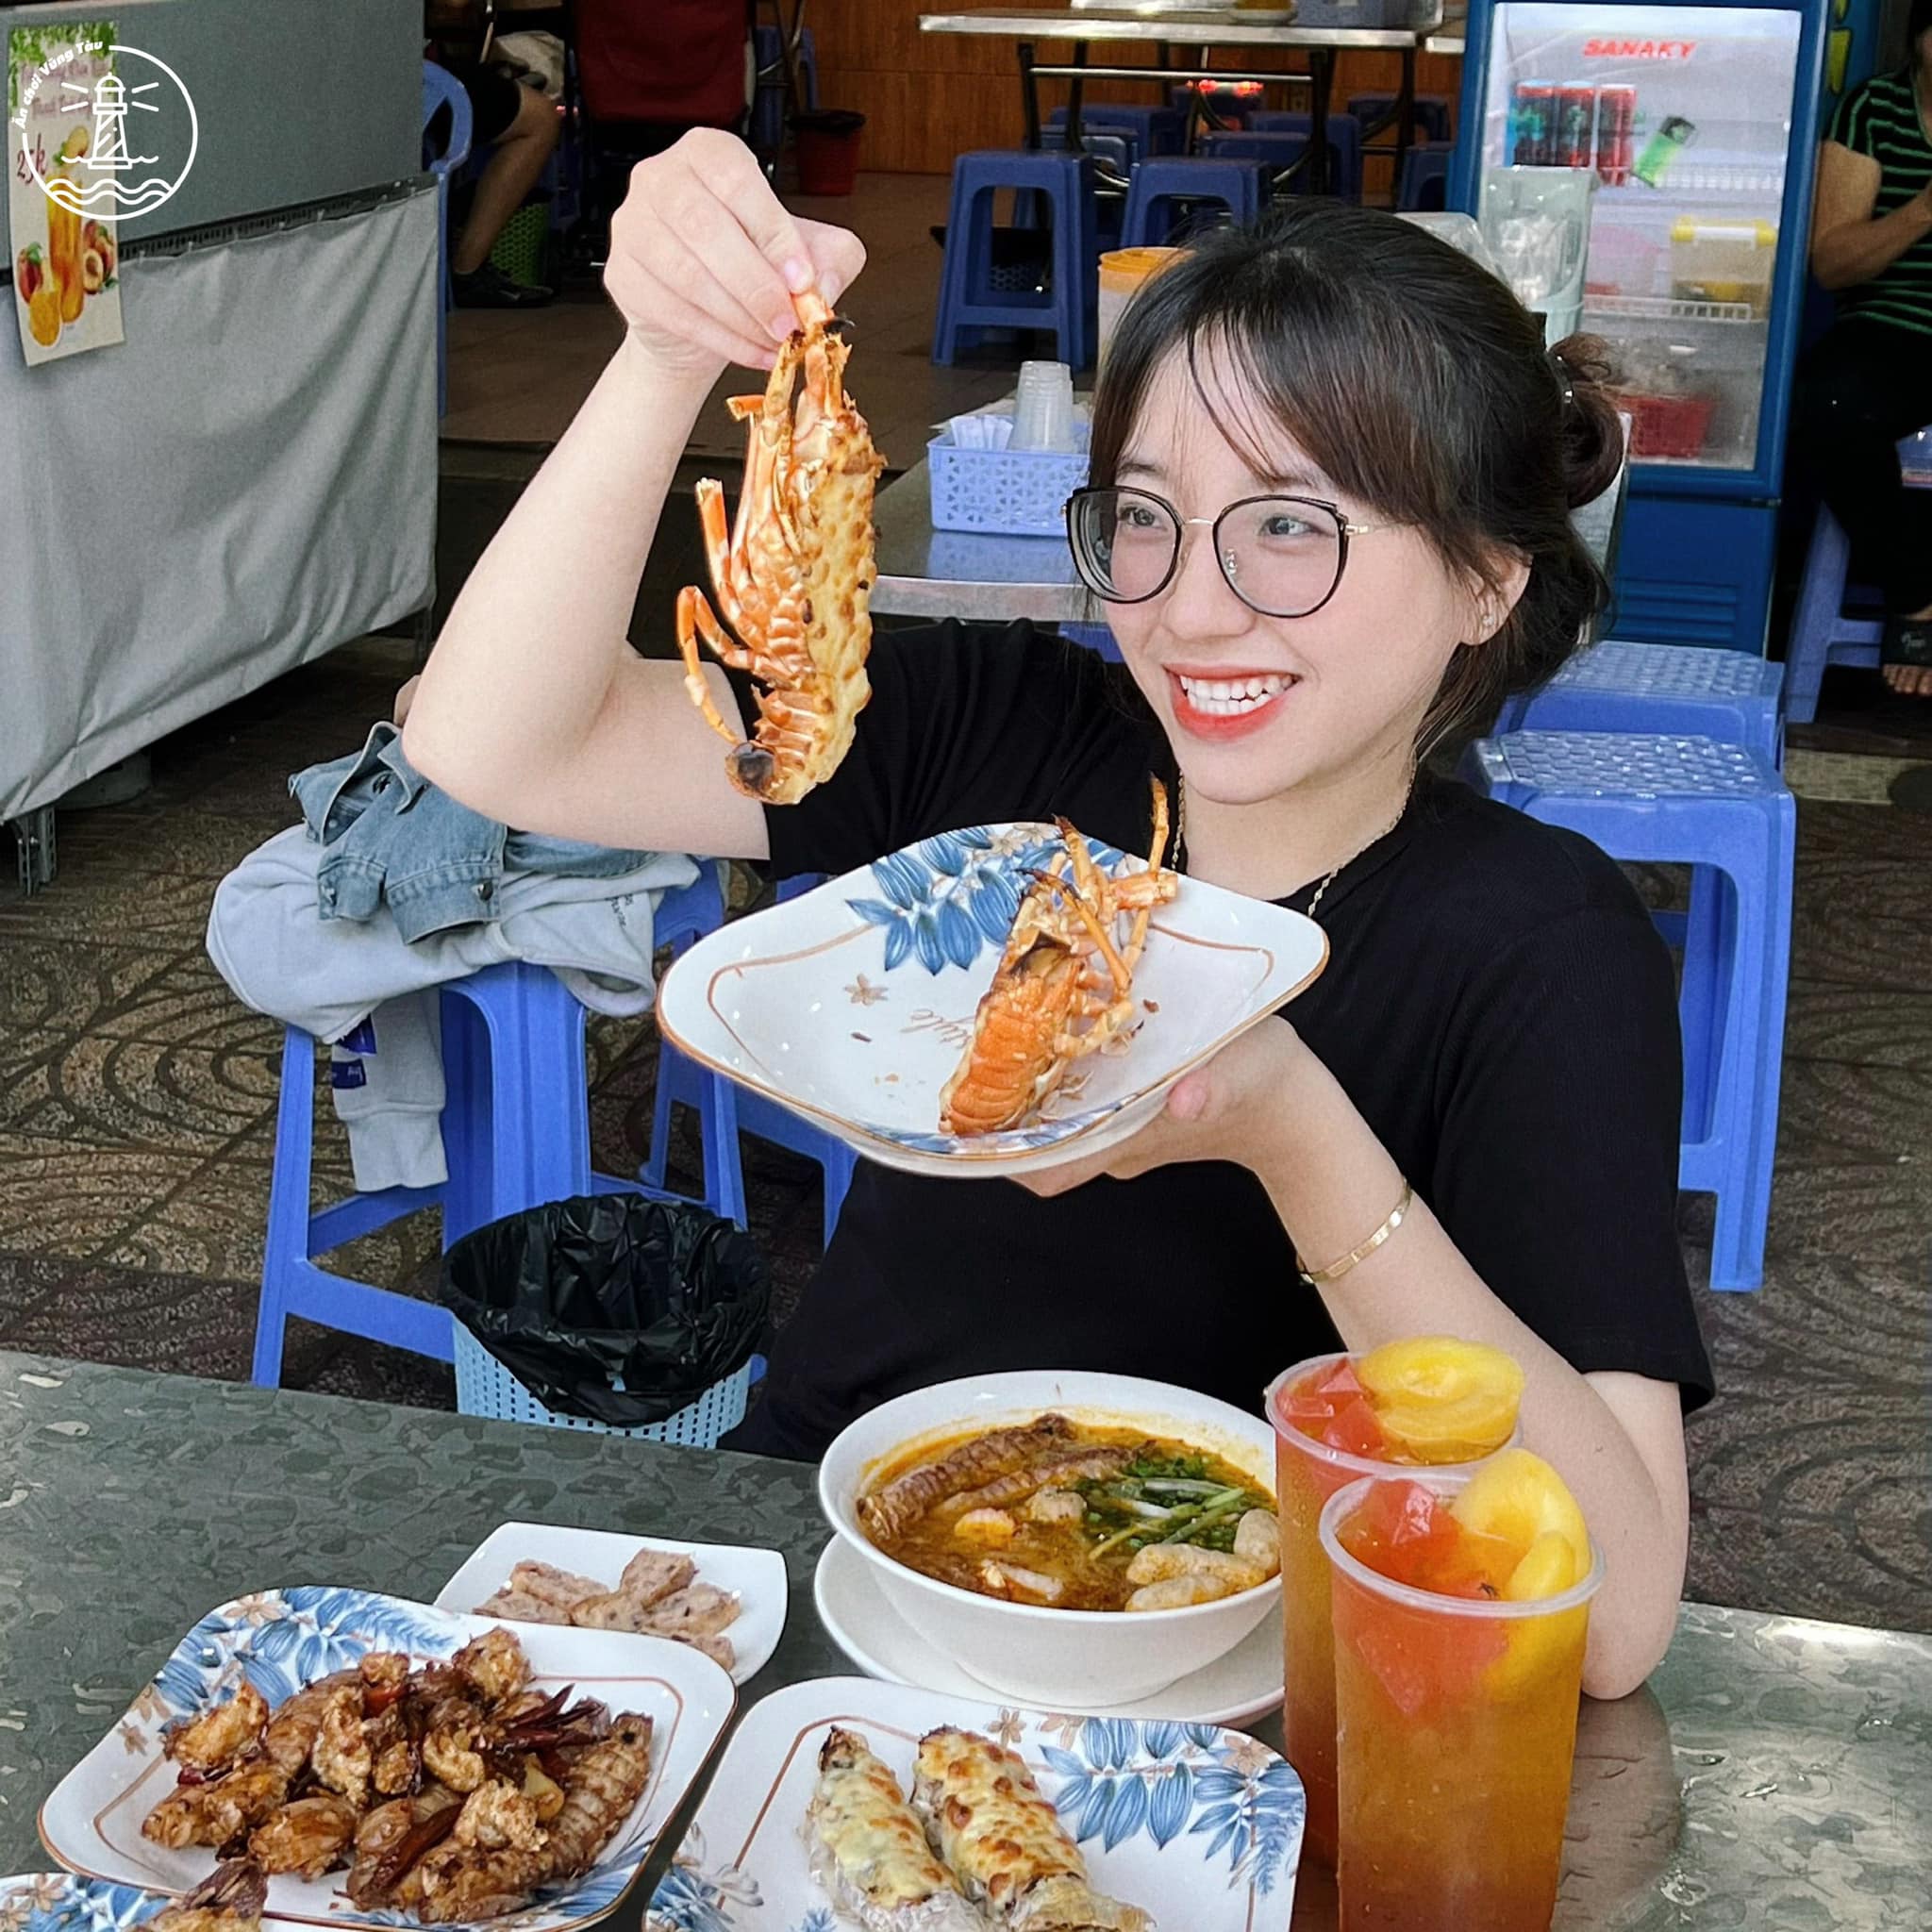 món ăn sáng gần biển Vũng Tàu